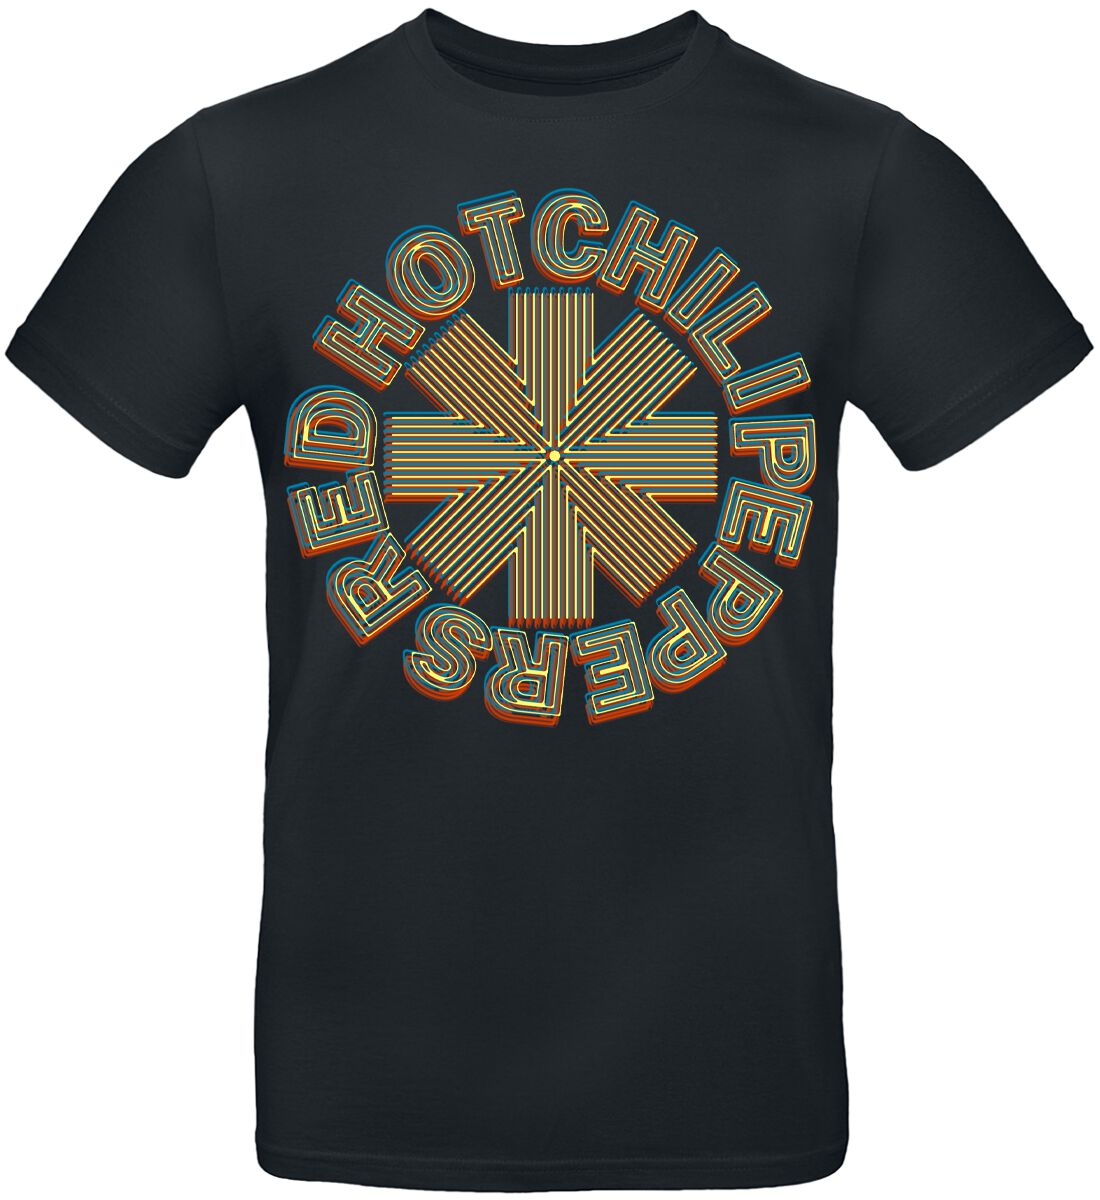 Red Hot Chili Peppers T-Shirt - Abstract Logo - S bis 3XL - für Männer - Größe L - schwarz  - Lizenziertes Merchandise!